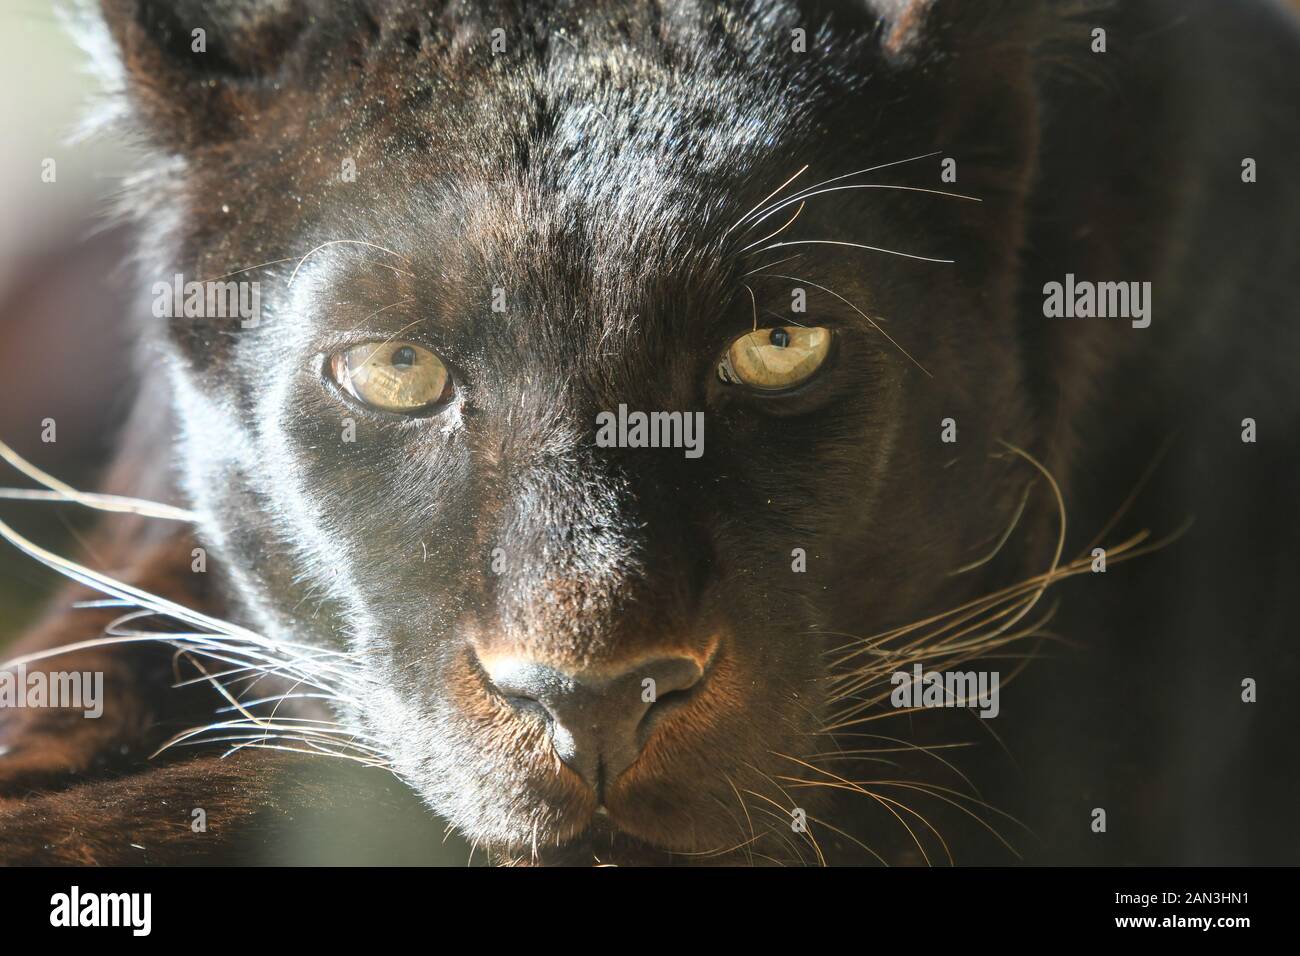 Pantera negra hi-res stock photography and images - Alamy